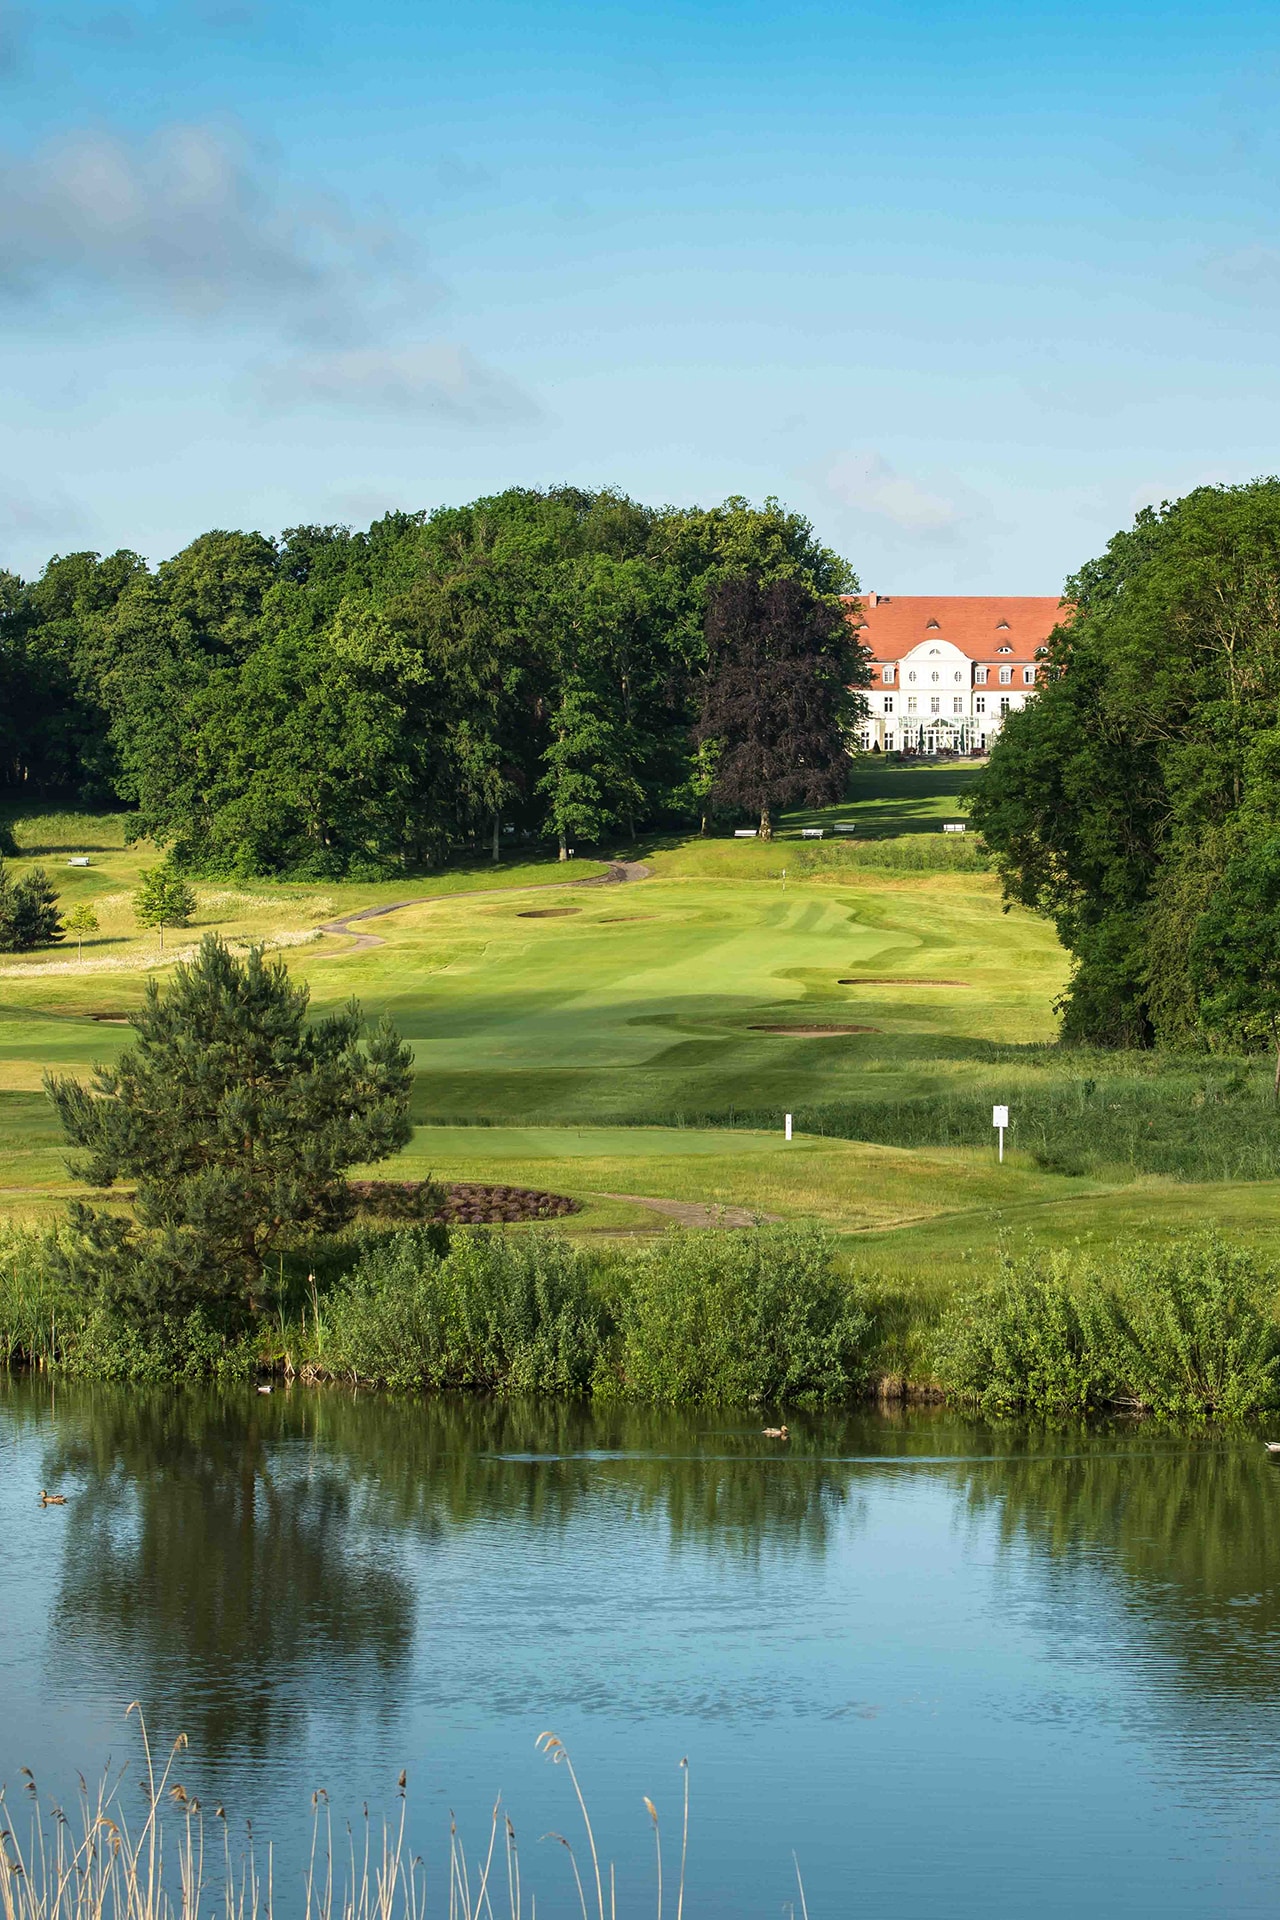 Blick auf das Schloss Fleesensee und den Golfplatz Golf Fleesensee.